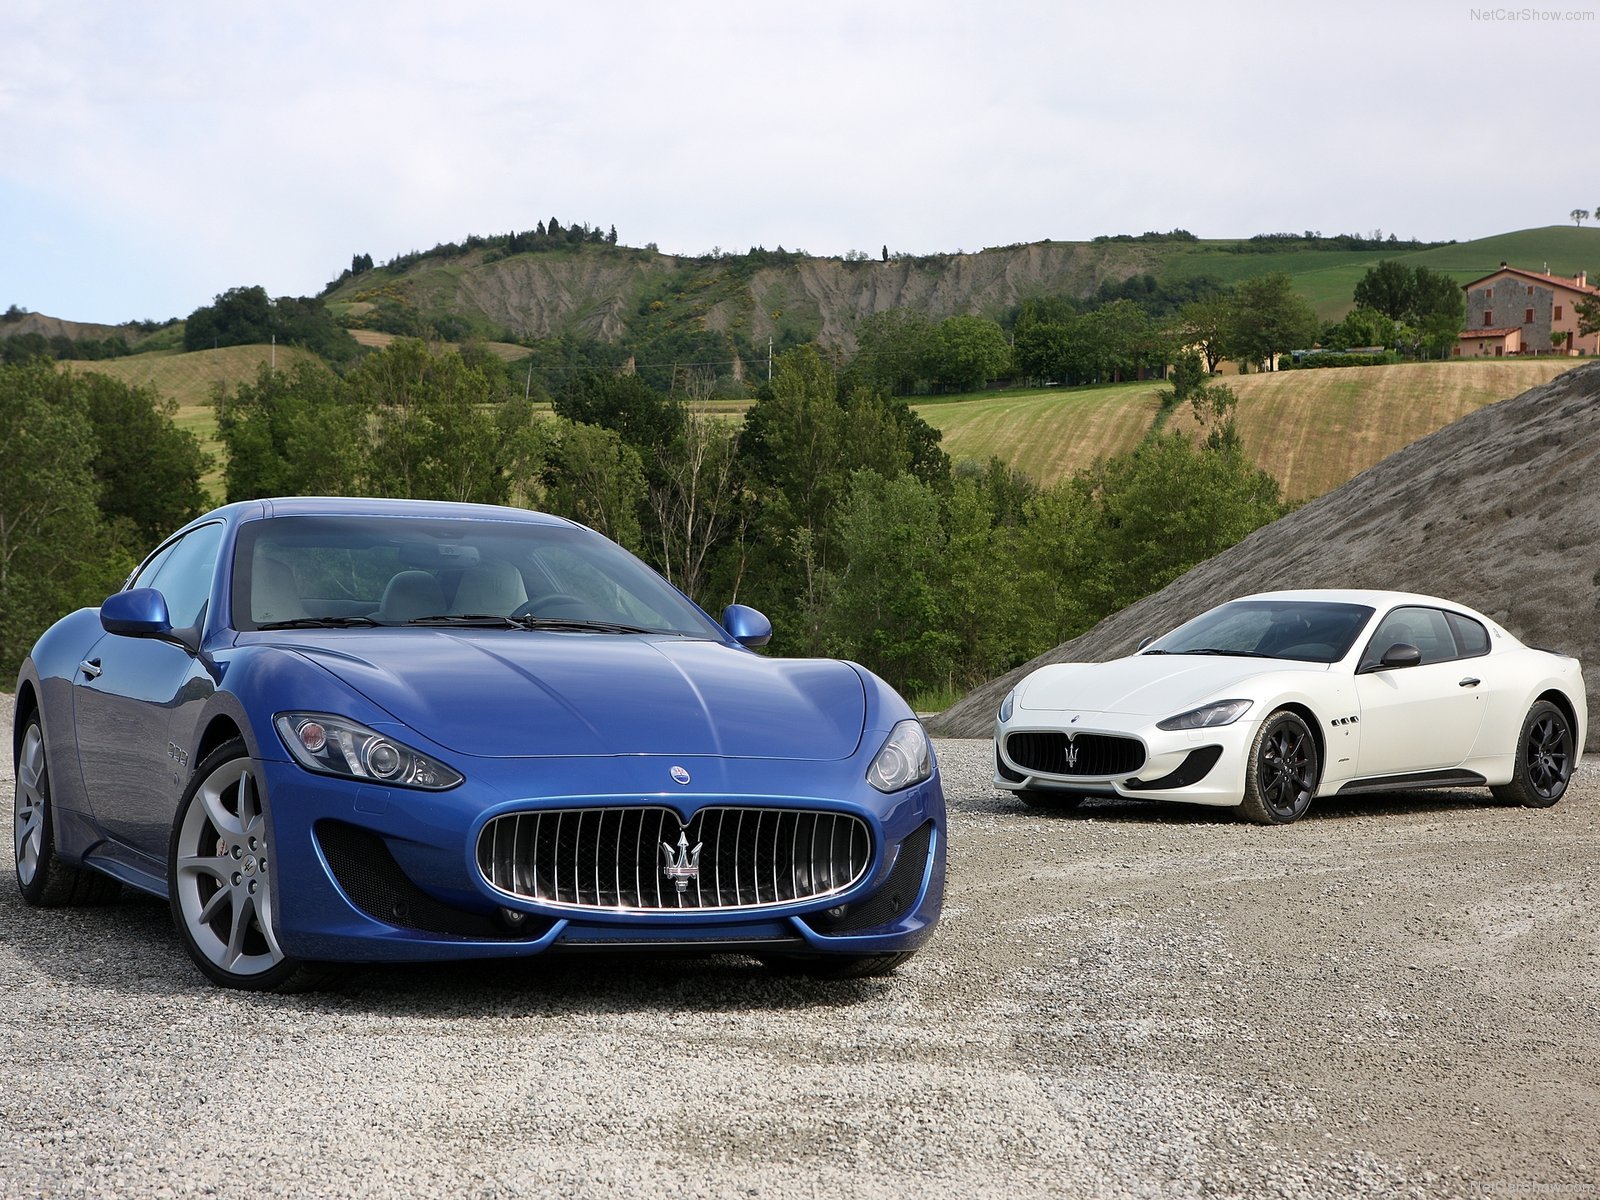 2013, Maserati, Gran, Turismo, Sport, Cars, Blue Wallpaper